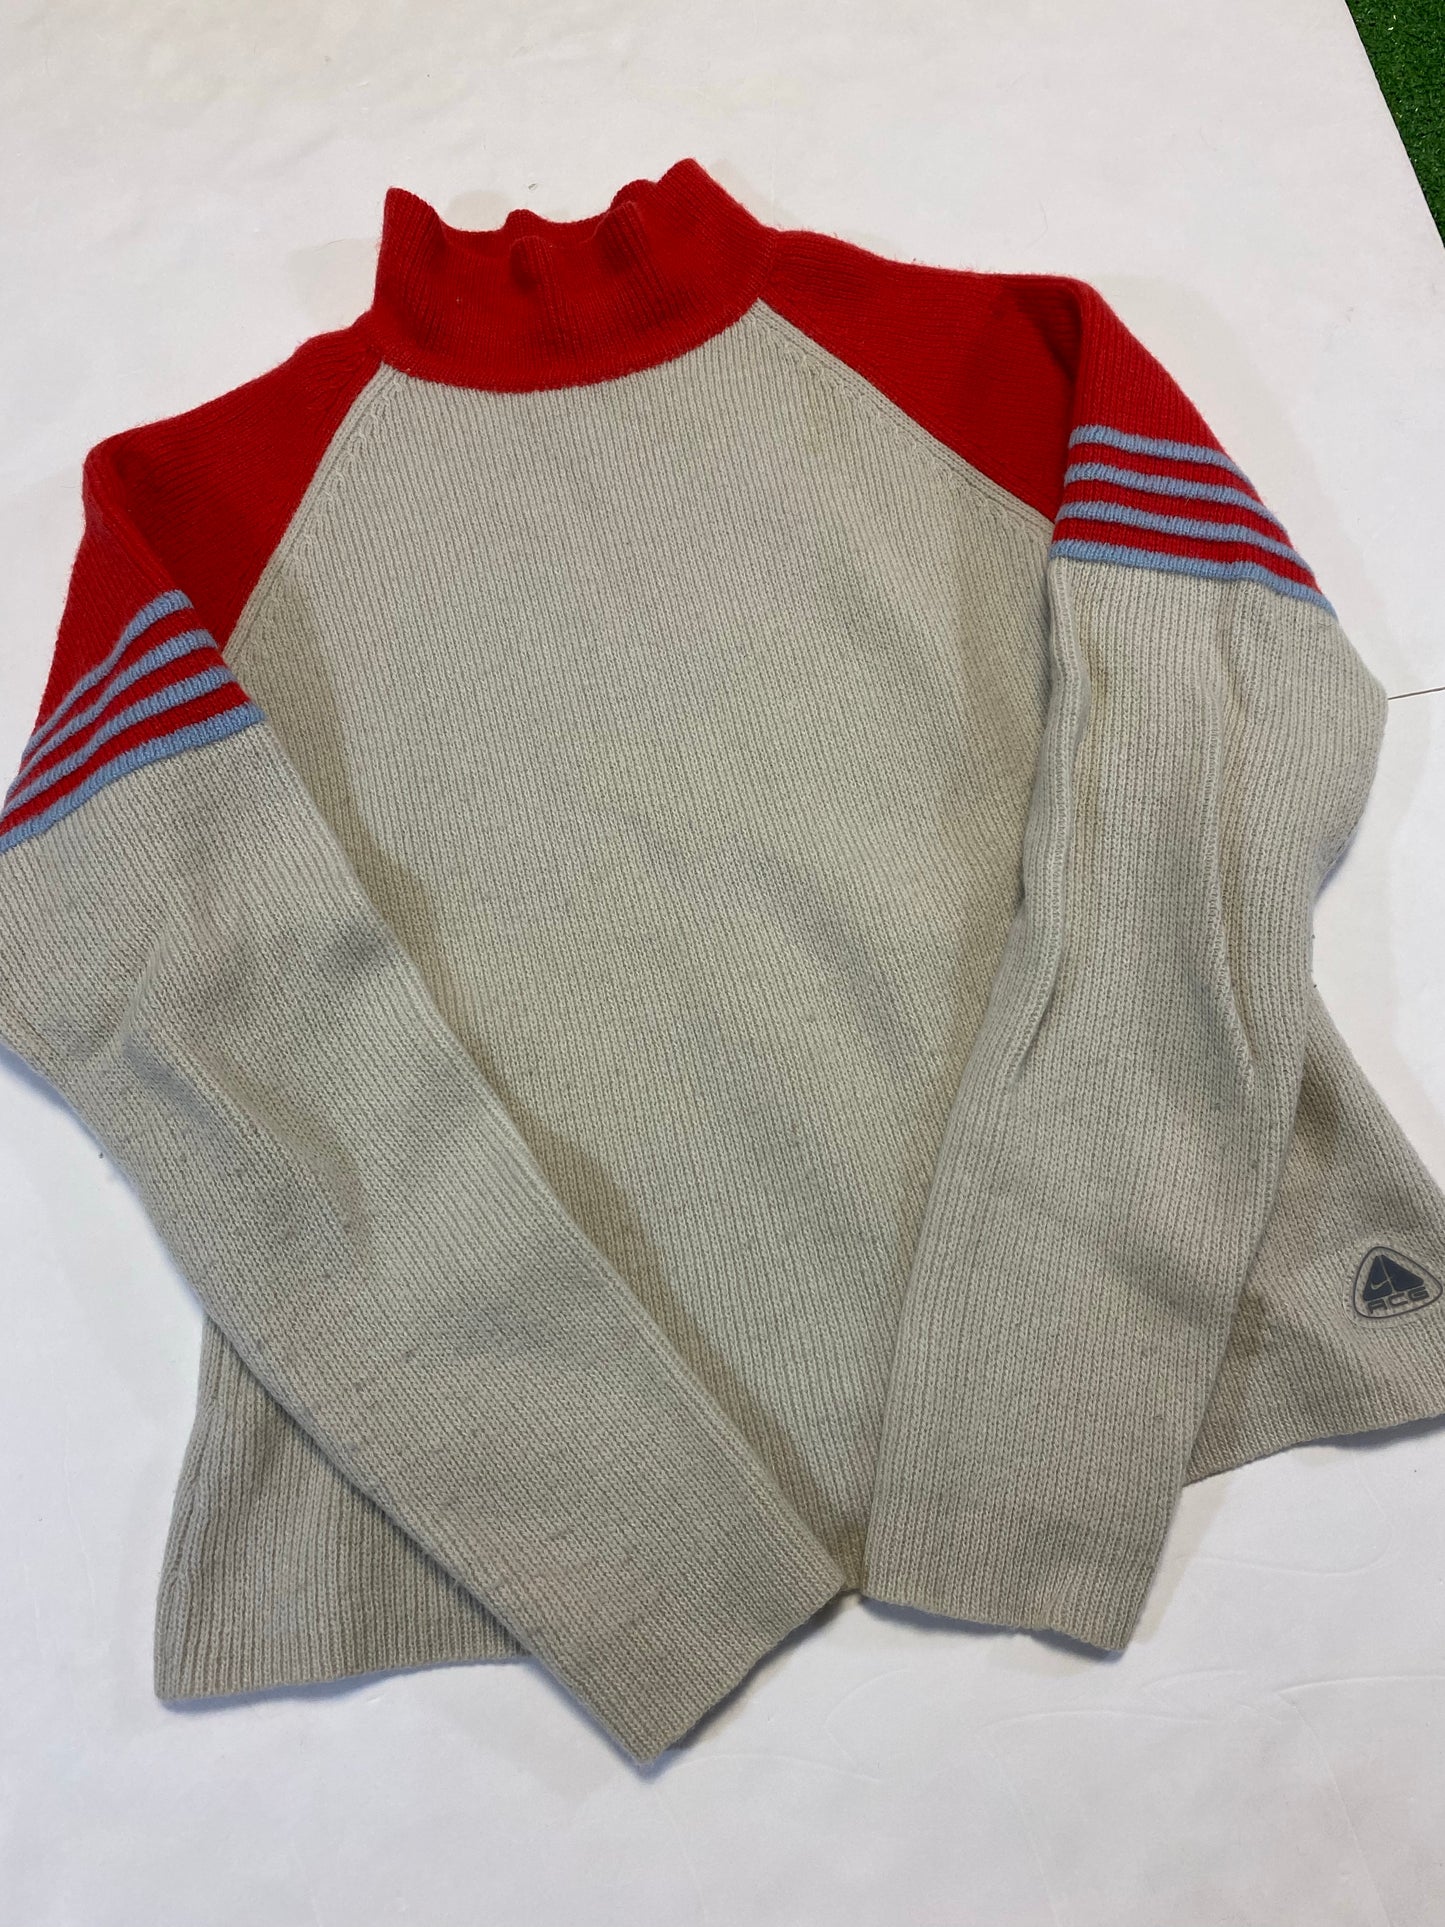 Vintage Women’s Nike ACG Knit Sweater